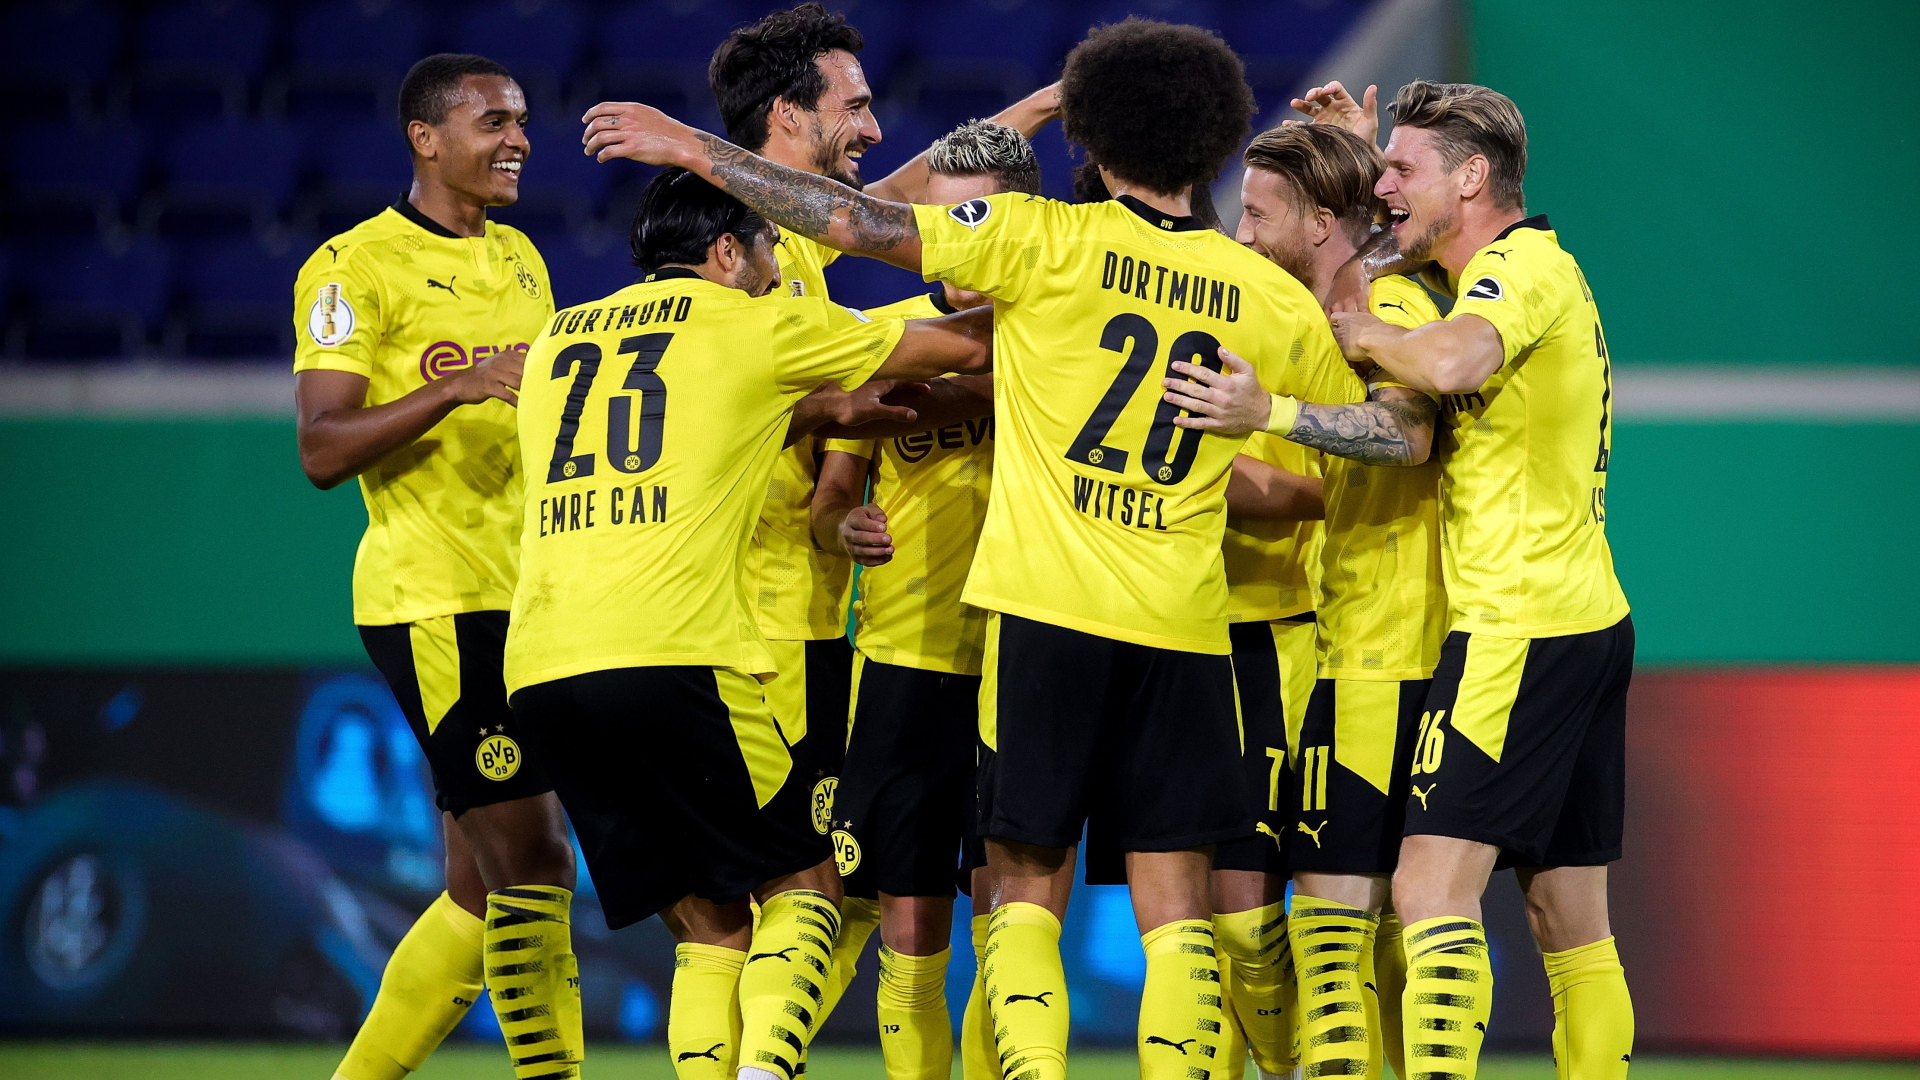 Spieler von Borussia Dortmund bejubeln ein Tor von Marco Reus | Bildquelle: FRIEDEMANN VOGEL/EPA-EFE/Shutter